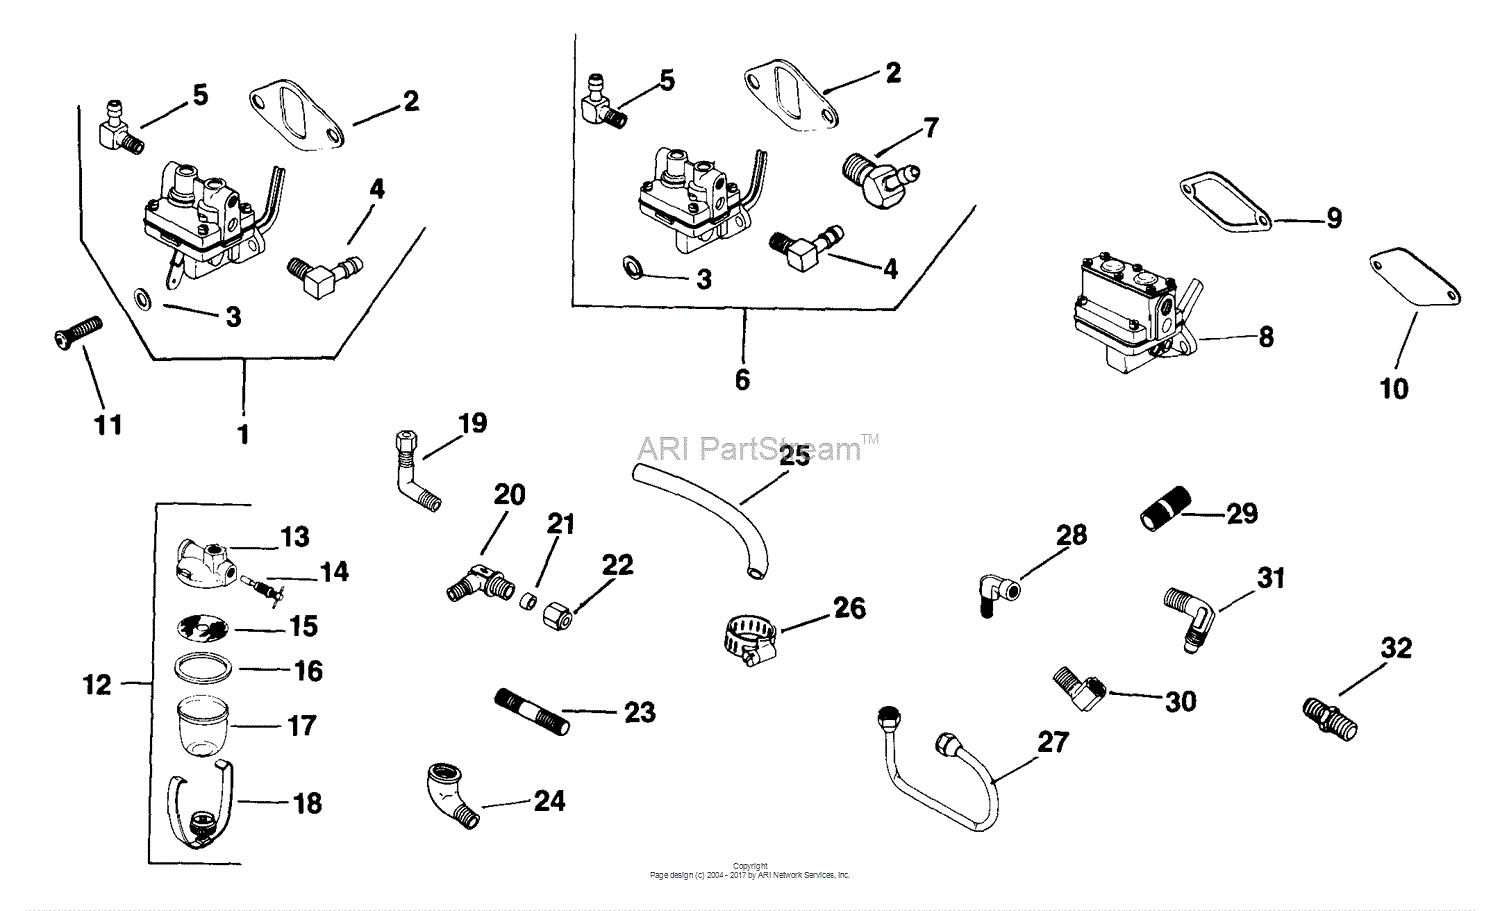 Kohler K321 Wiring Diagram 1